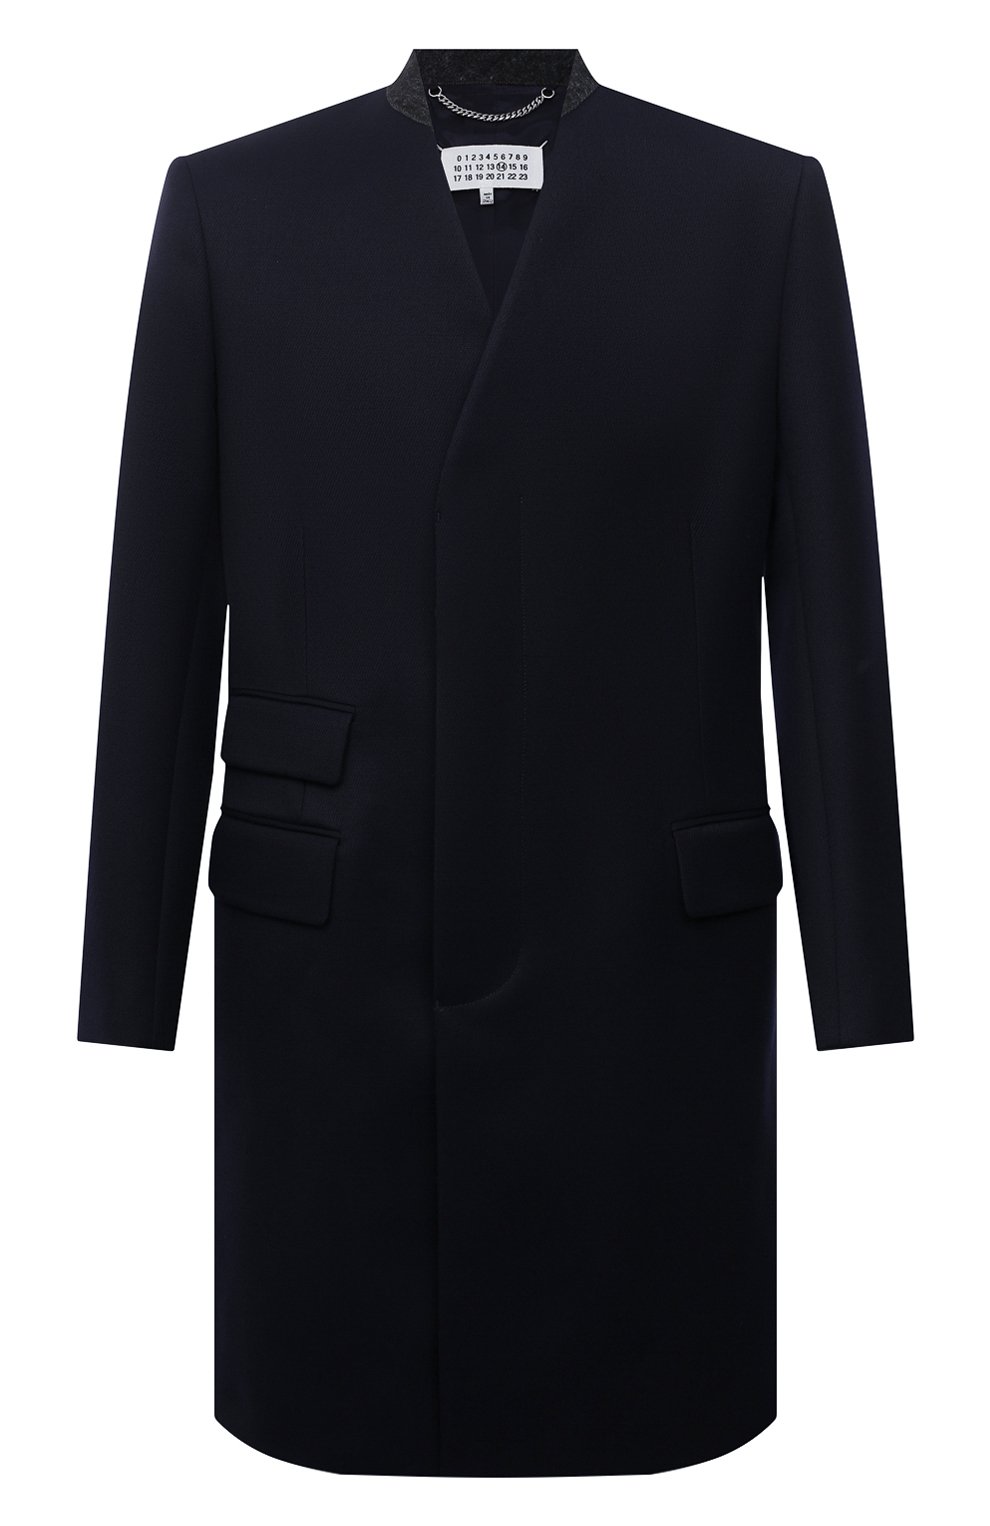 Пальто Maison Margiela, Шерстяное пальто Maison Margiela, Италия, Синий, Шерсть: 100%; Подкладка-вискоза: 100%;, 12244297  - купить